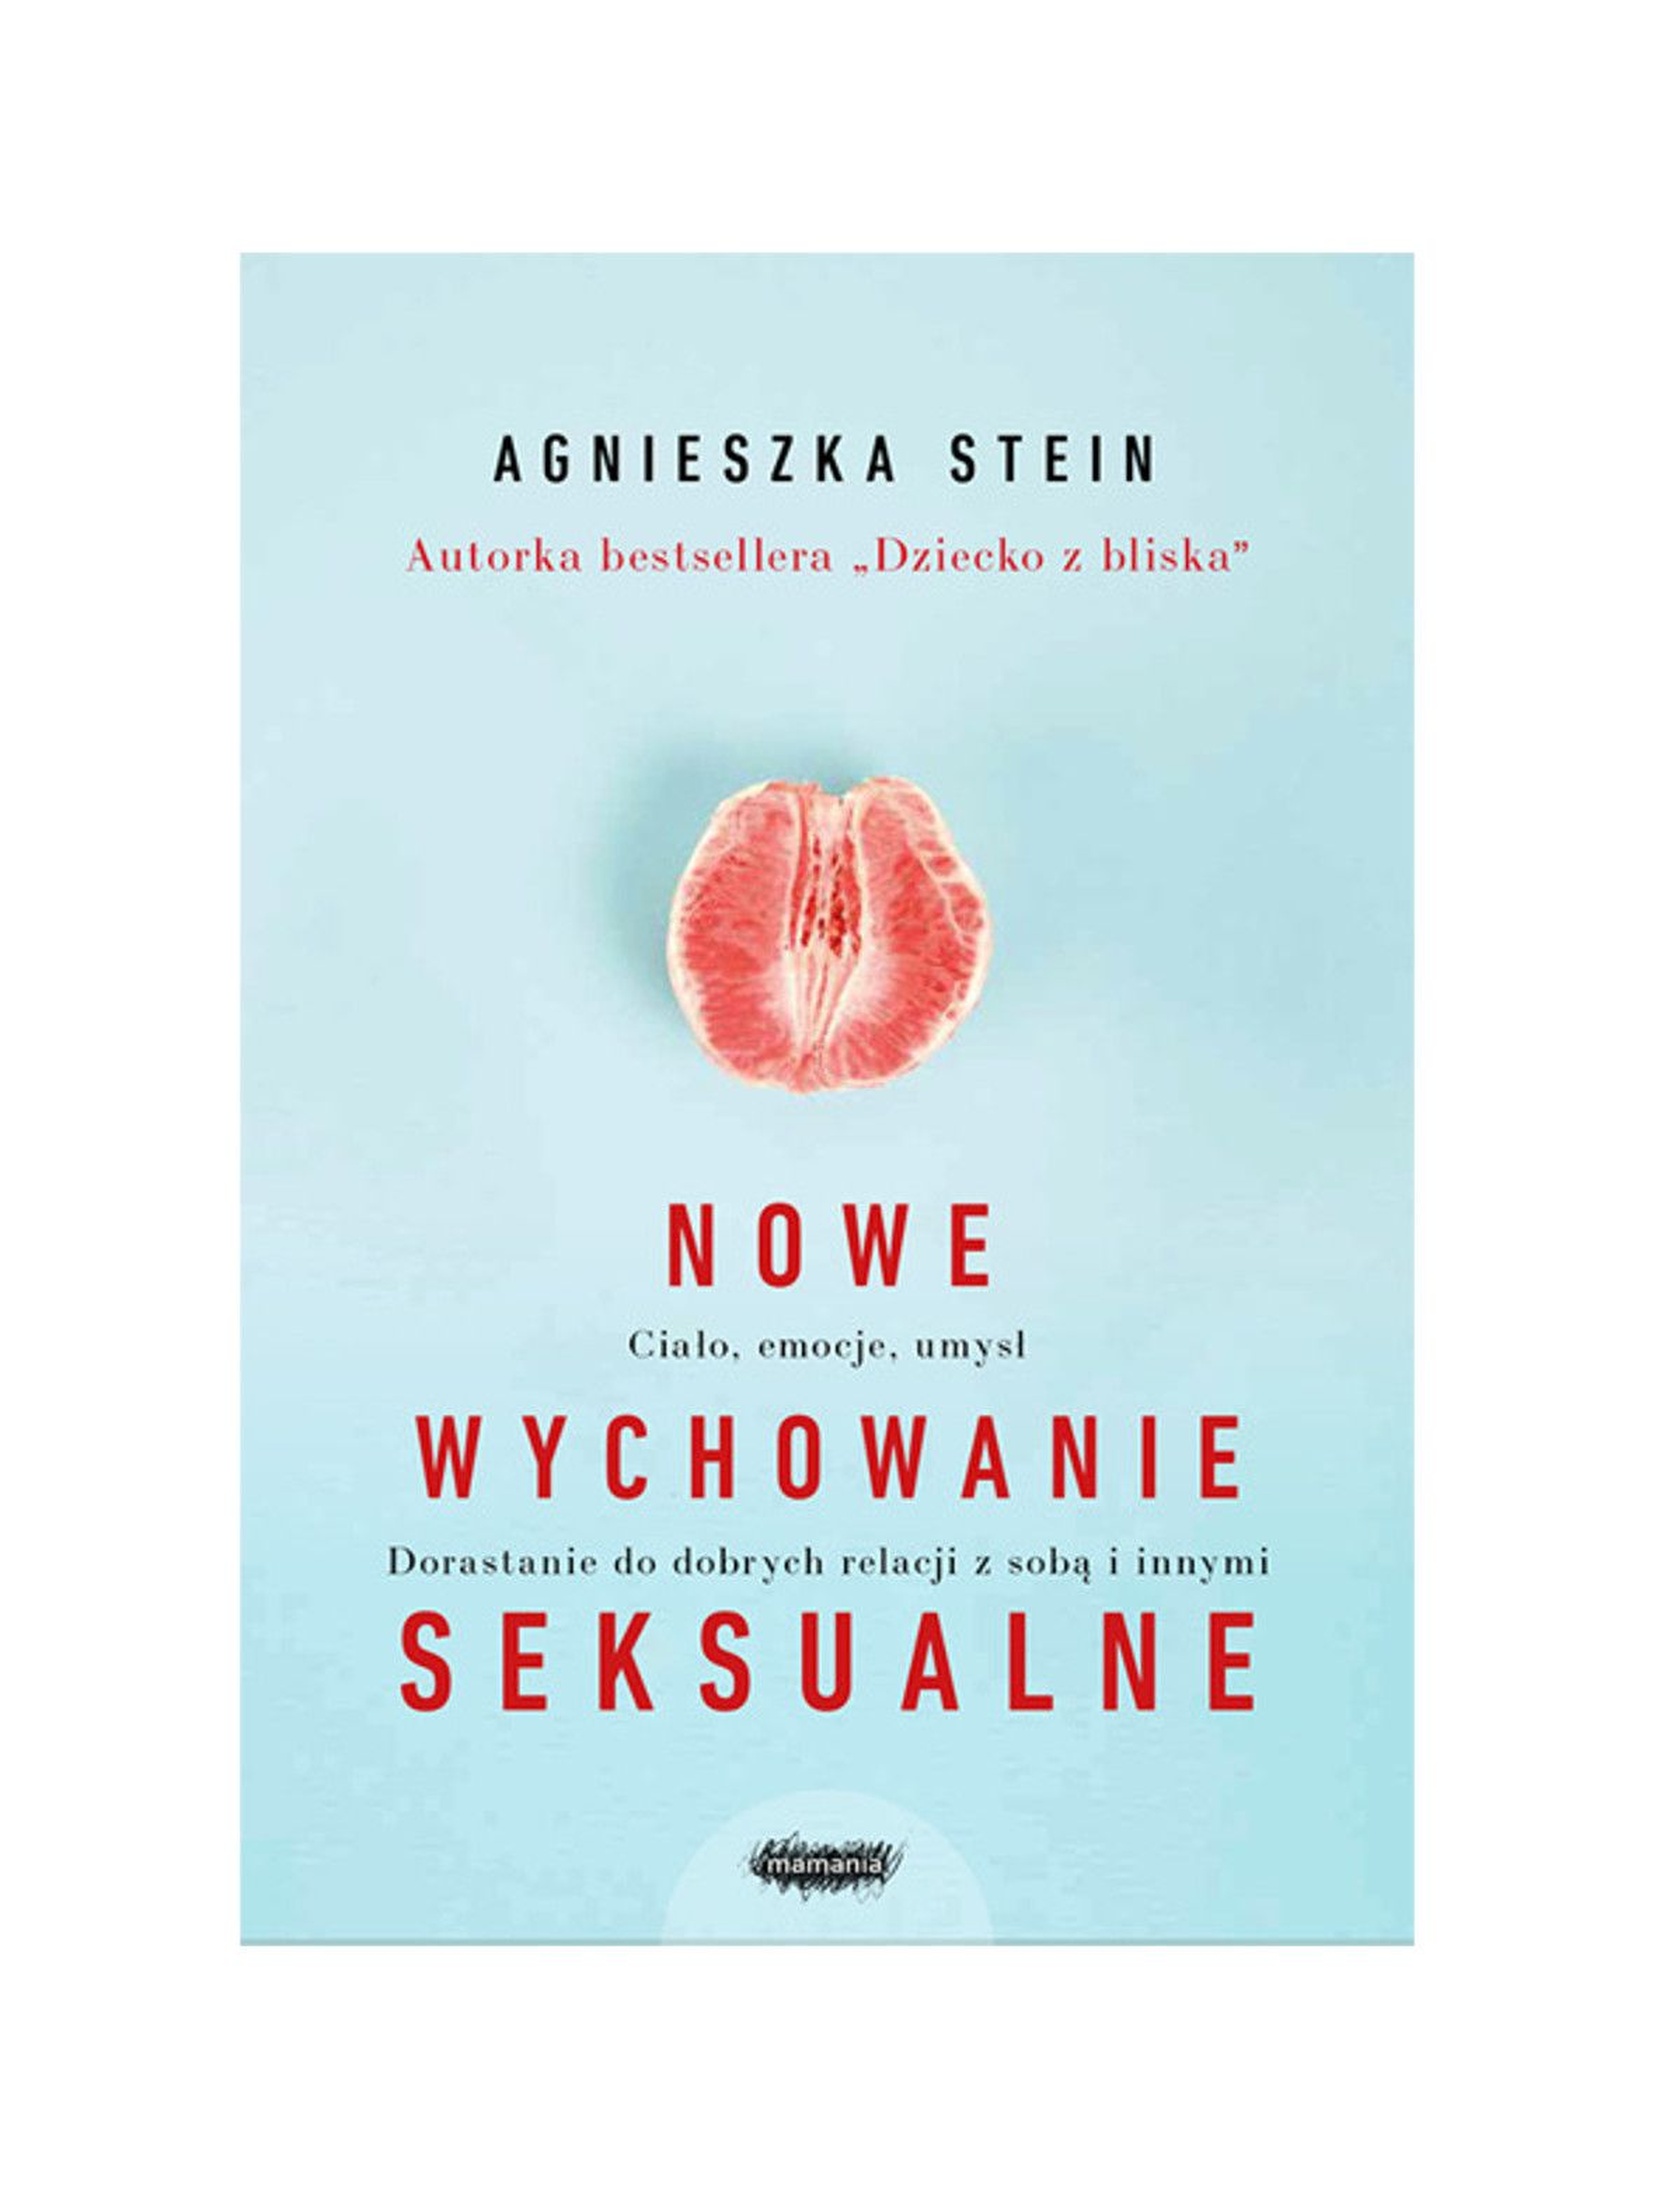 Książka "Nowe wychowanie seksualne" A.Stein